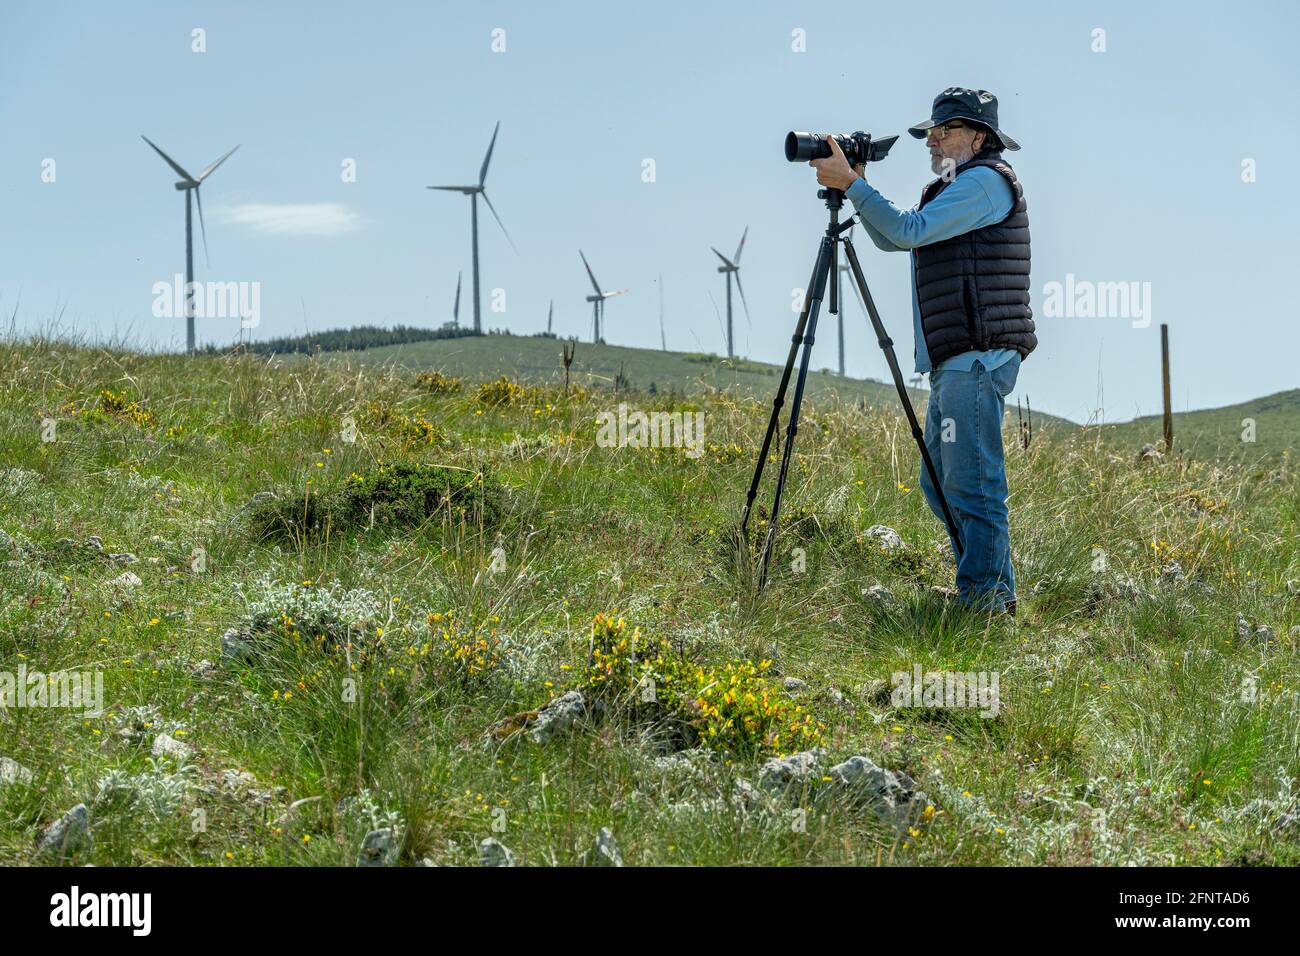 Uomo anziano che utilizza nuove tecnologie. Macchina fotografica su treppiede, uomo vestito casual. Turbine eoliche in background. Abruzzo, Italia, Europa Foto Stock